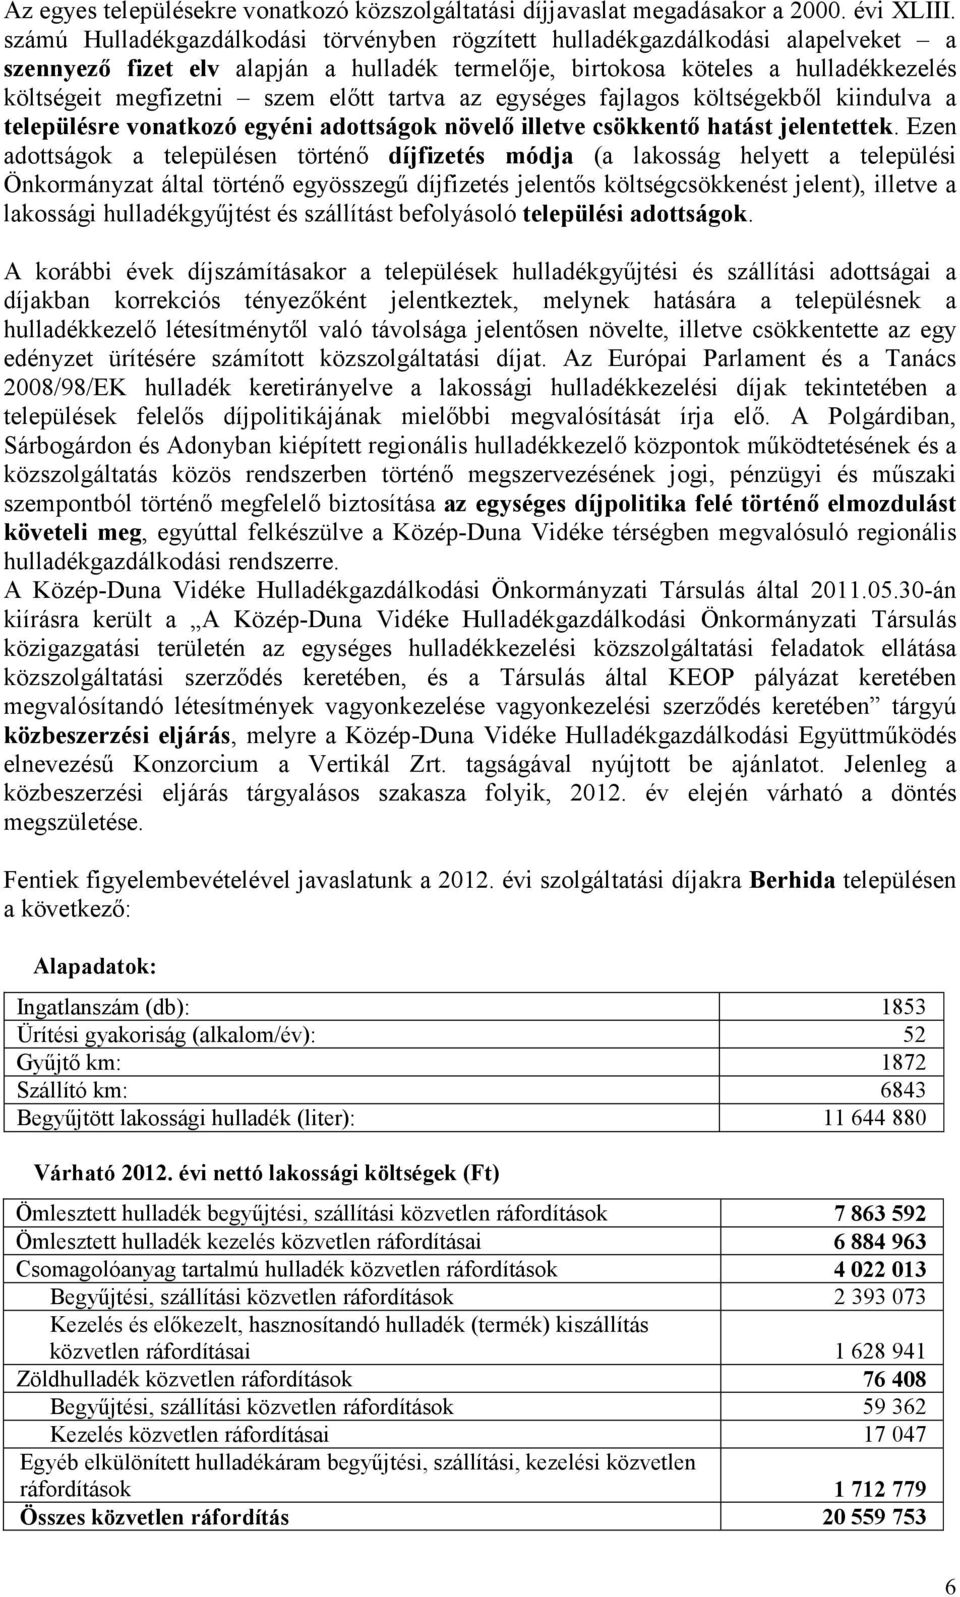 elıtt tartva az egységes fajlagos költségekbıl kiindulva a településre vonatkozó egyéni adottságok növelı illetve csökkentı hatást jelentettek.